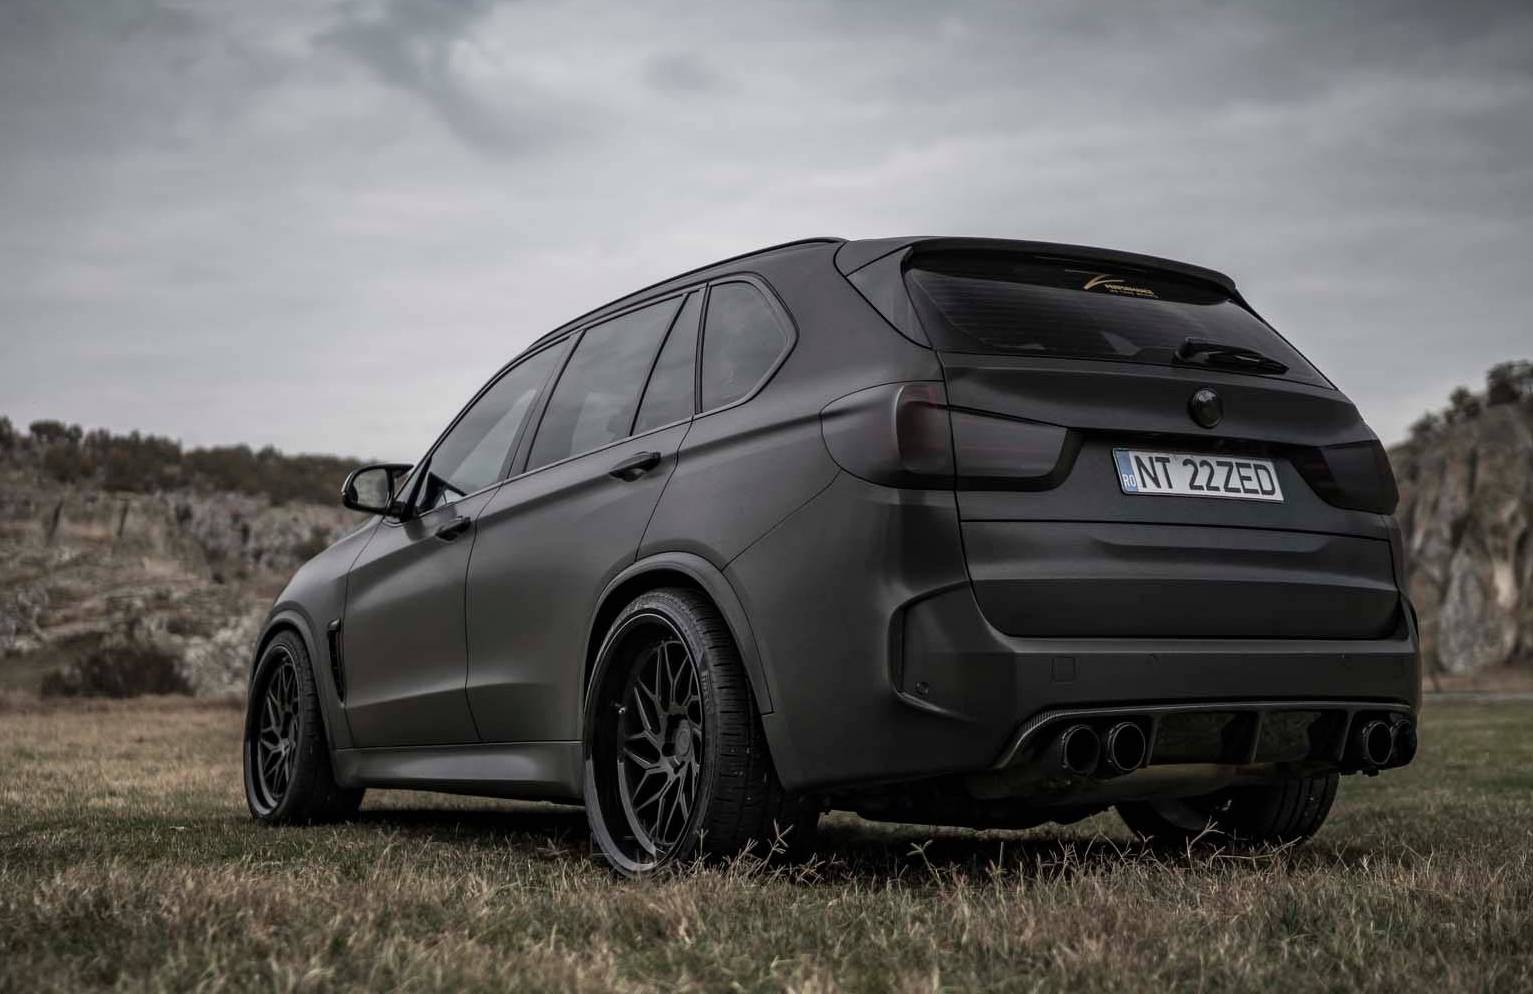 Z-Performance develops powerful stealth kit for BMW X5 M ...